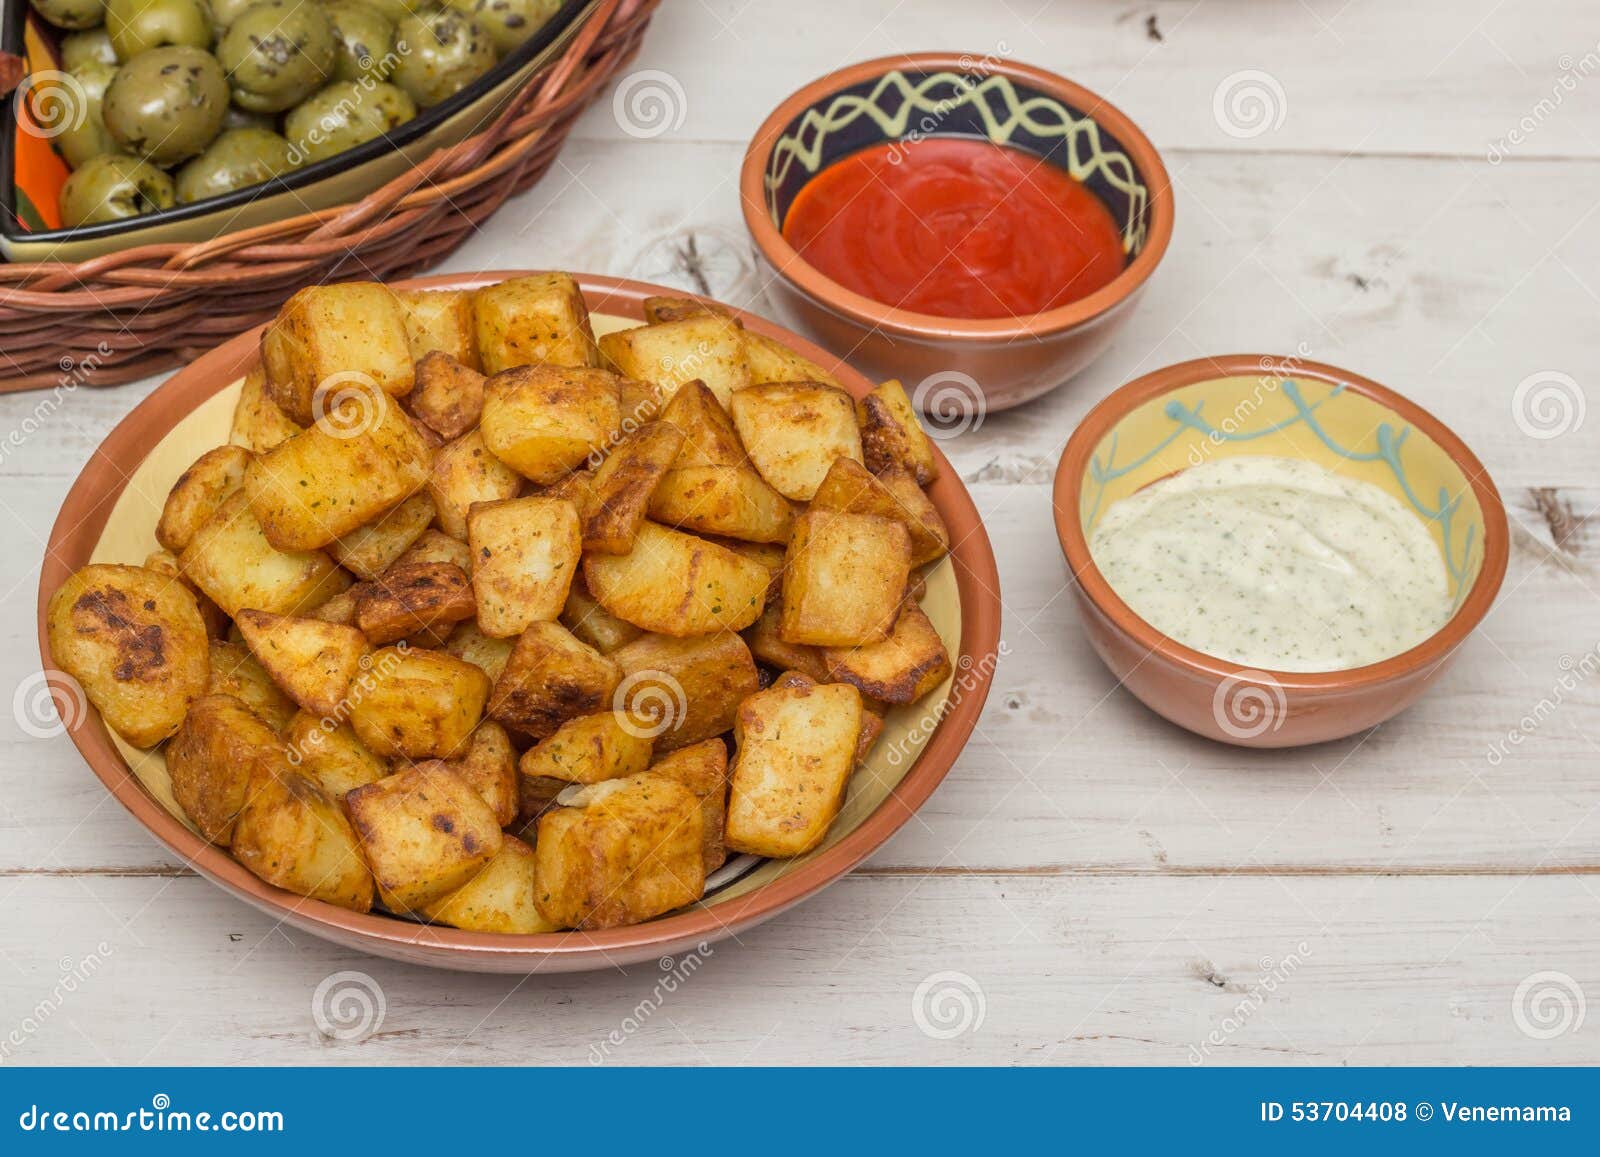 spanish tapa patatas bravas